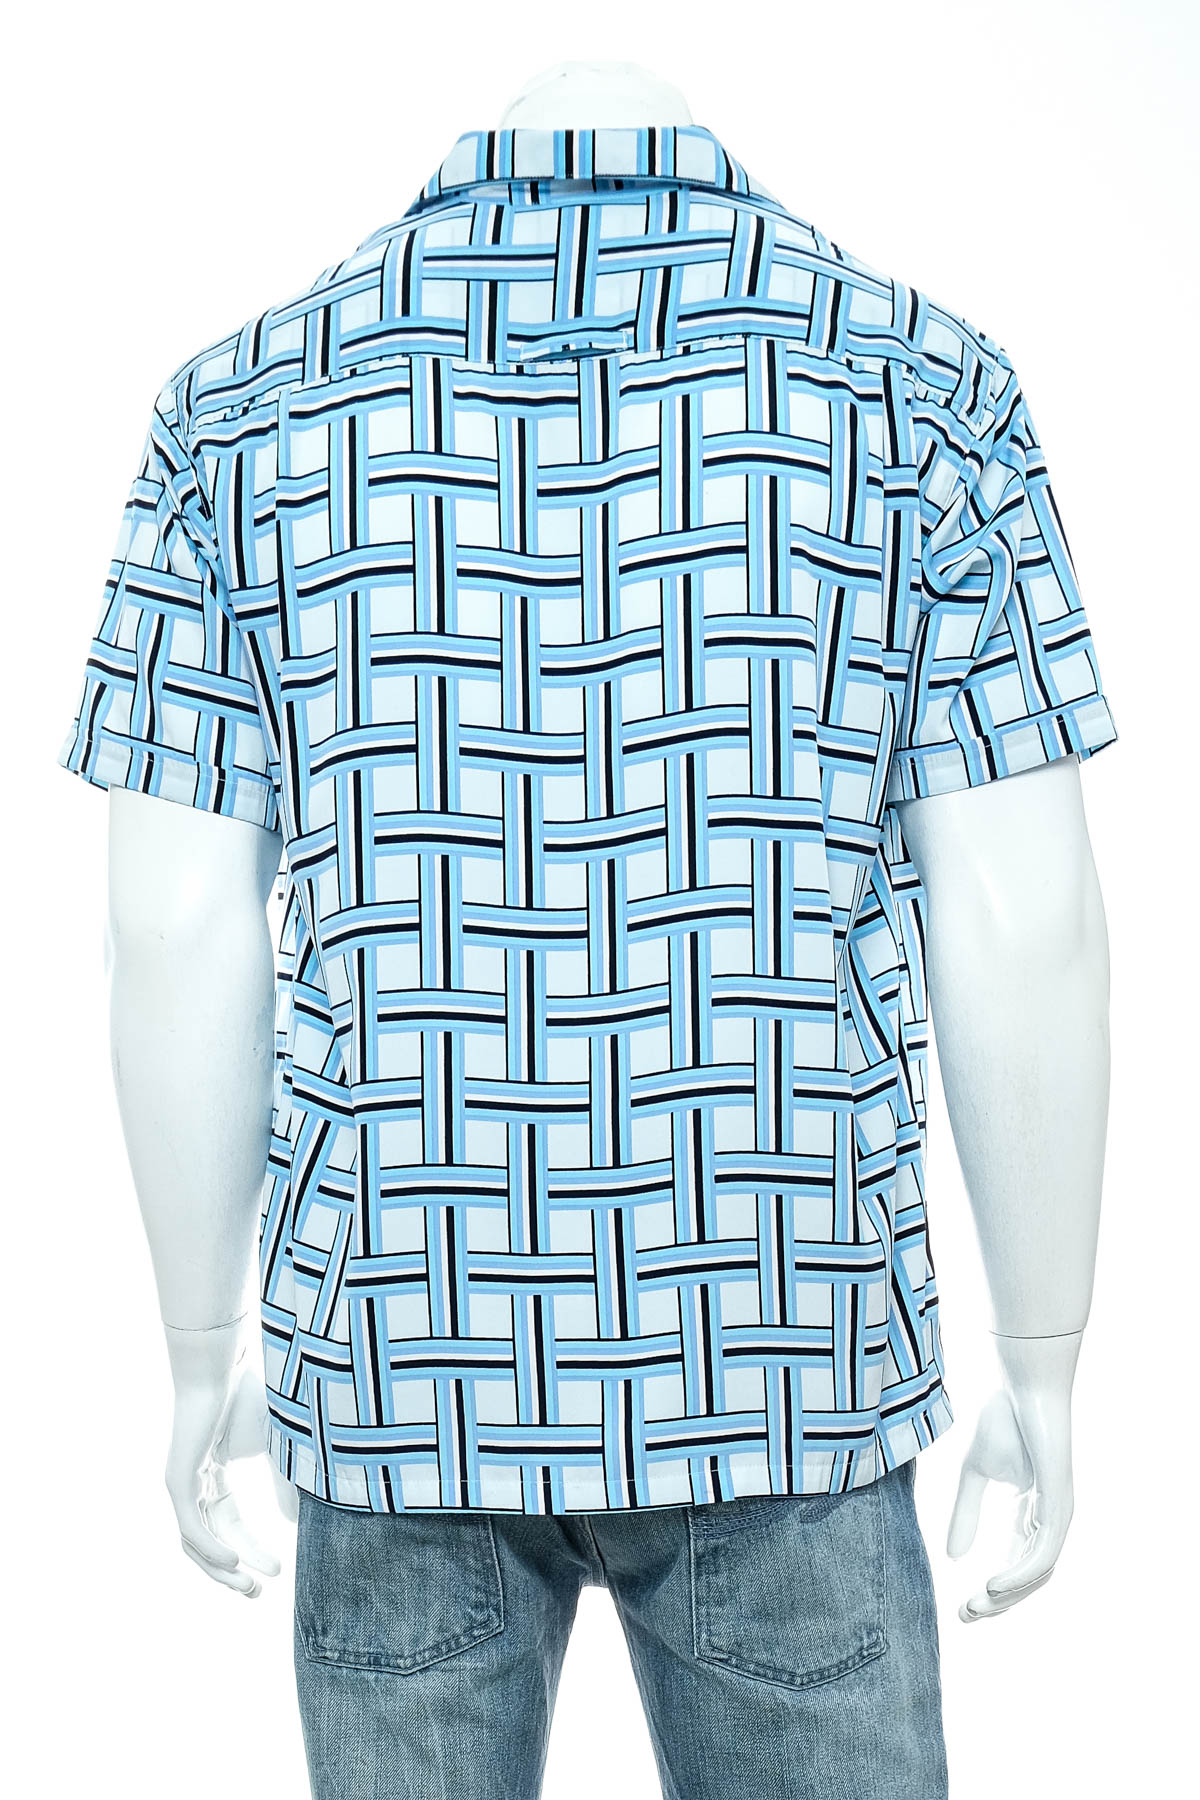 Ανδρικό πουκάμισο - Ben Sherman - 1